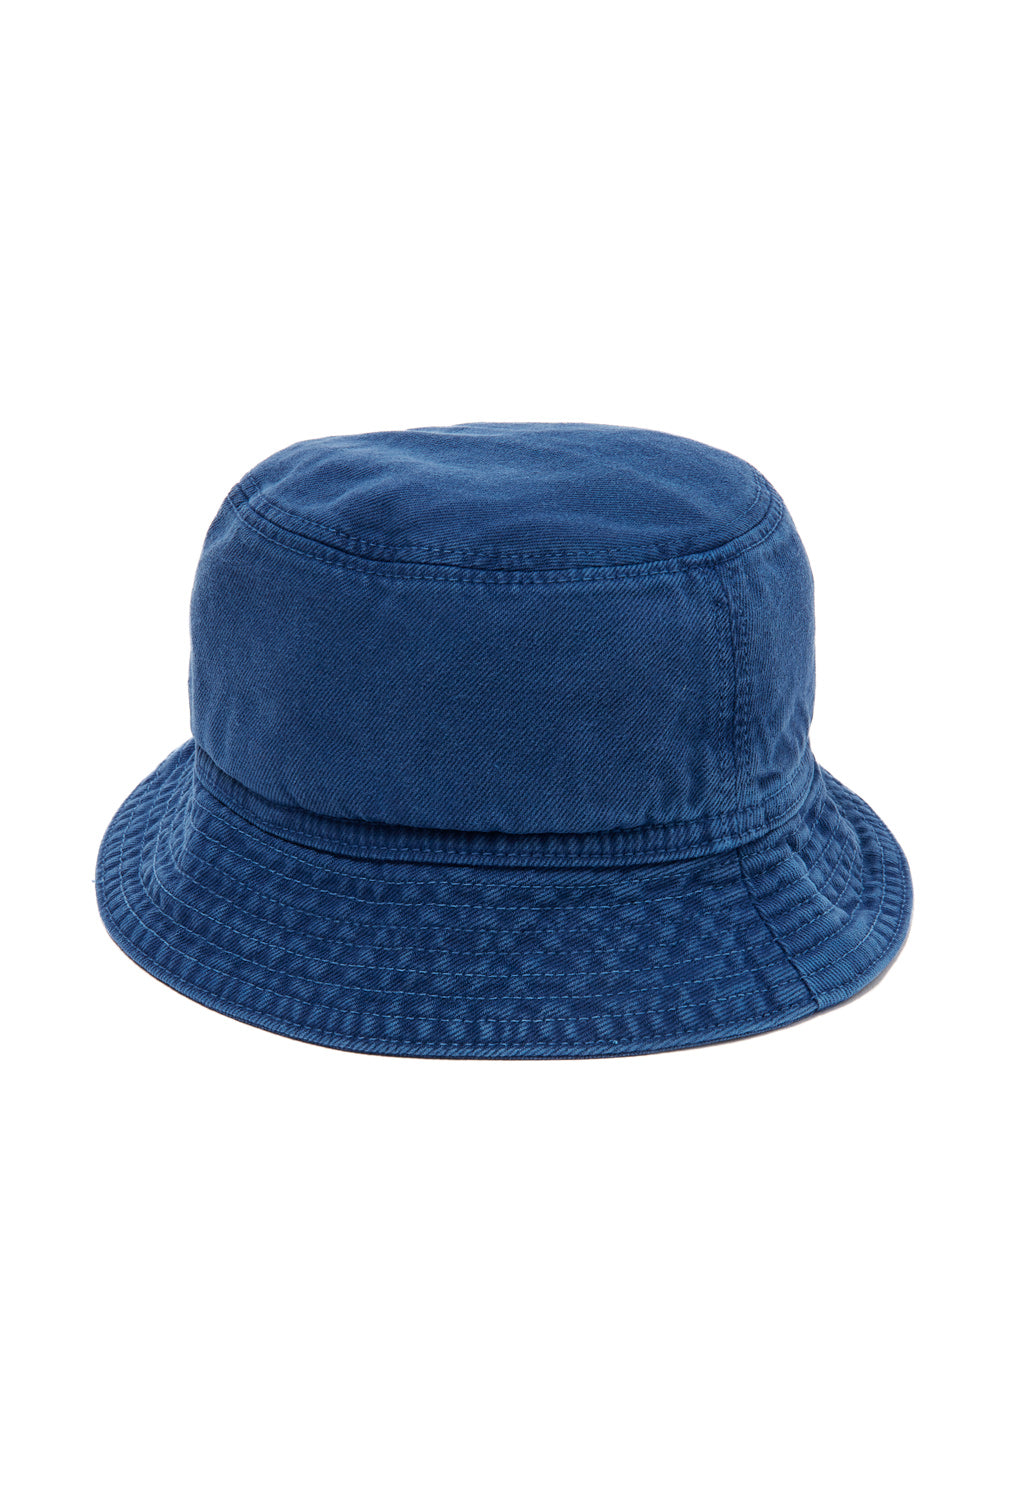 Carhartt WIP Garrison Bucket Hat - Elder